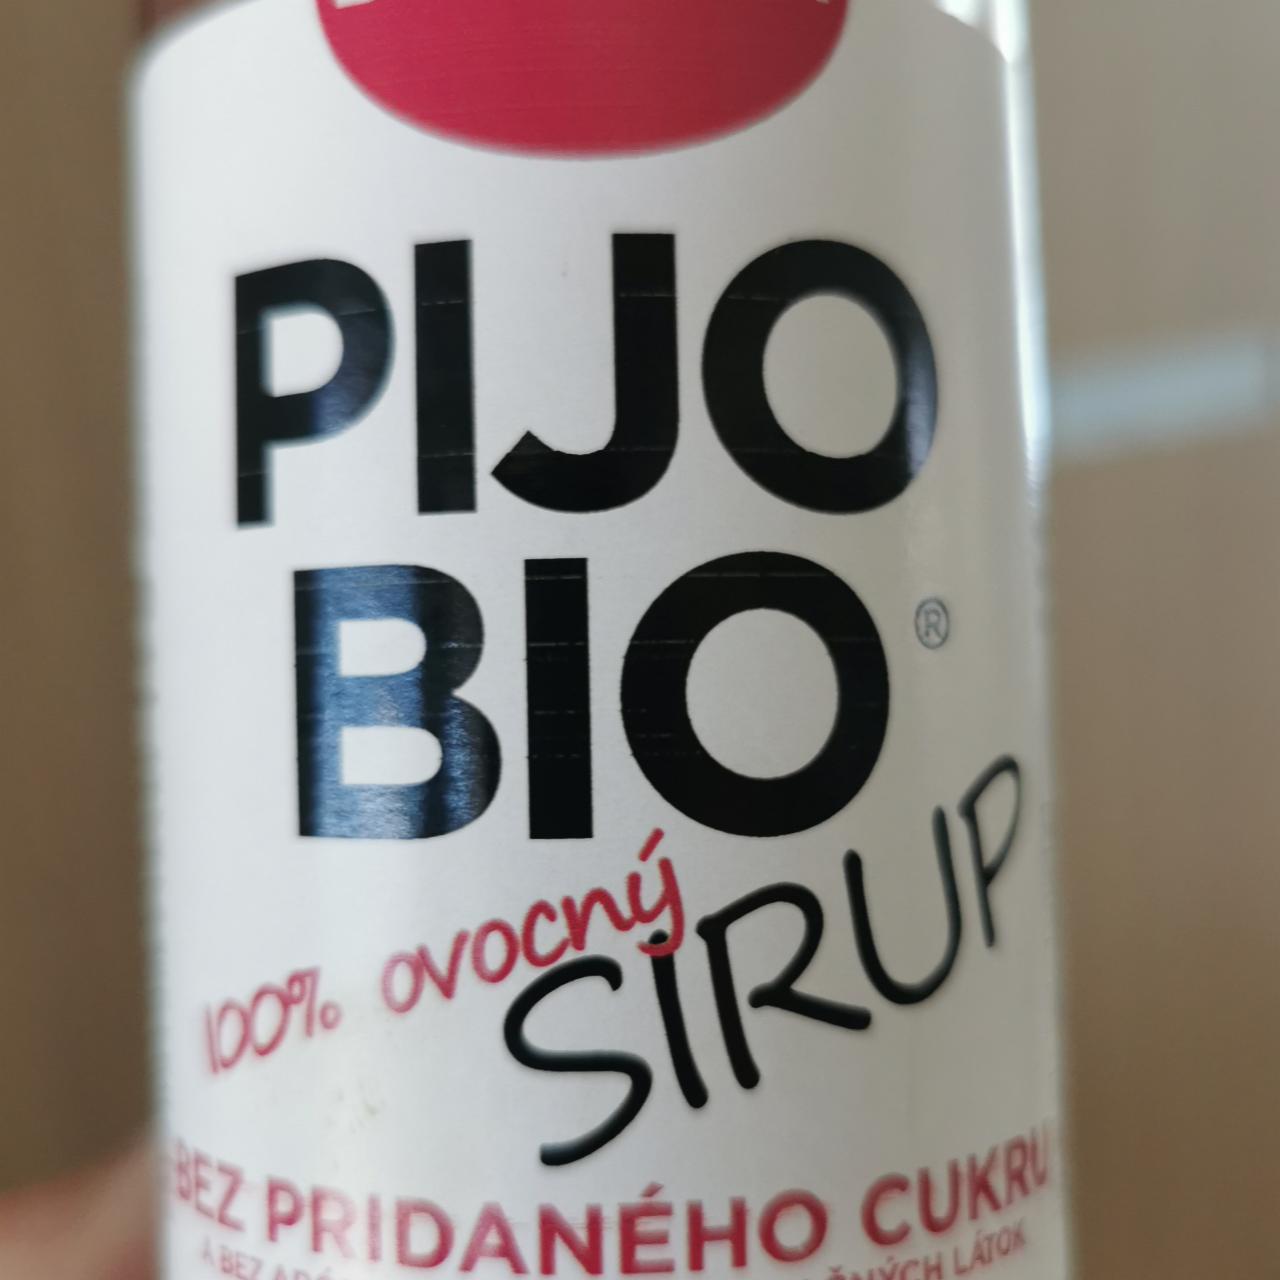 Fotografie - Pijo BIO 100% ovocný sirup Brusnica